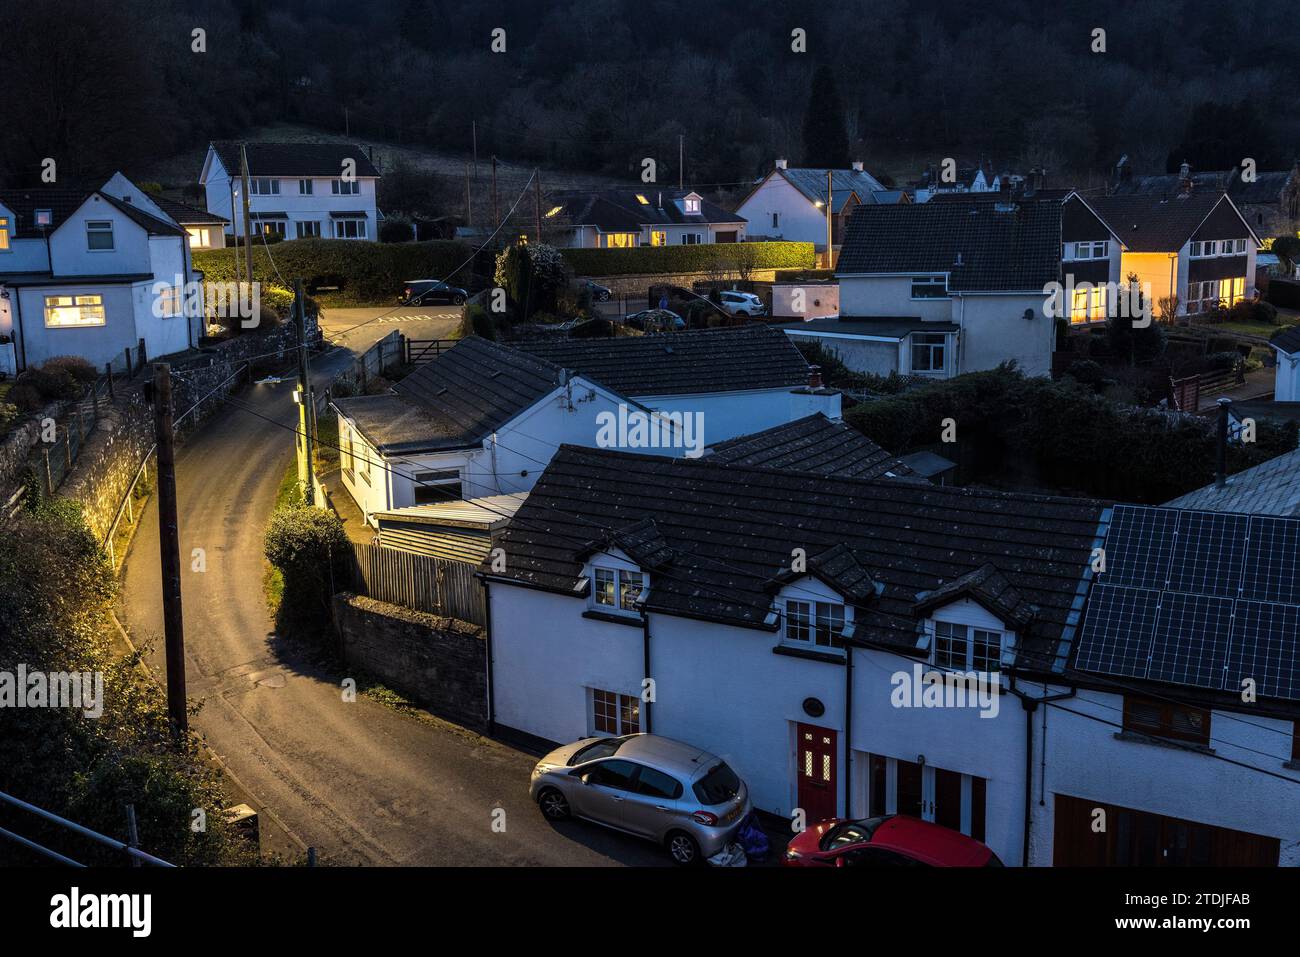 Village la nuit avec lampadaires et maisons, Llanfoist, pays de Galles, Royaume-Uni Banque D'Images